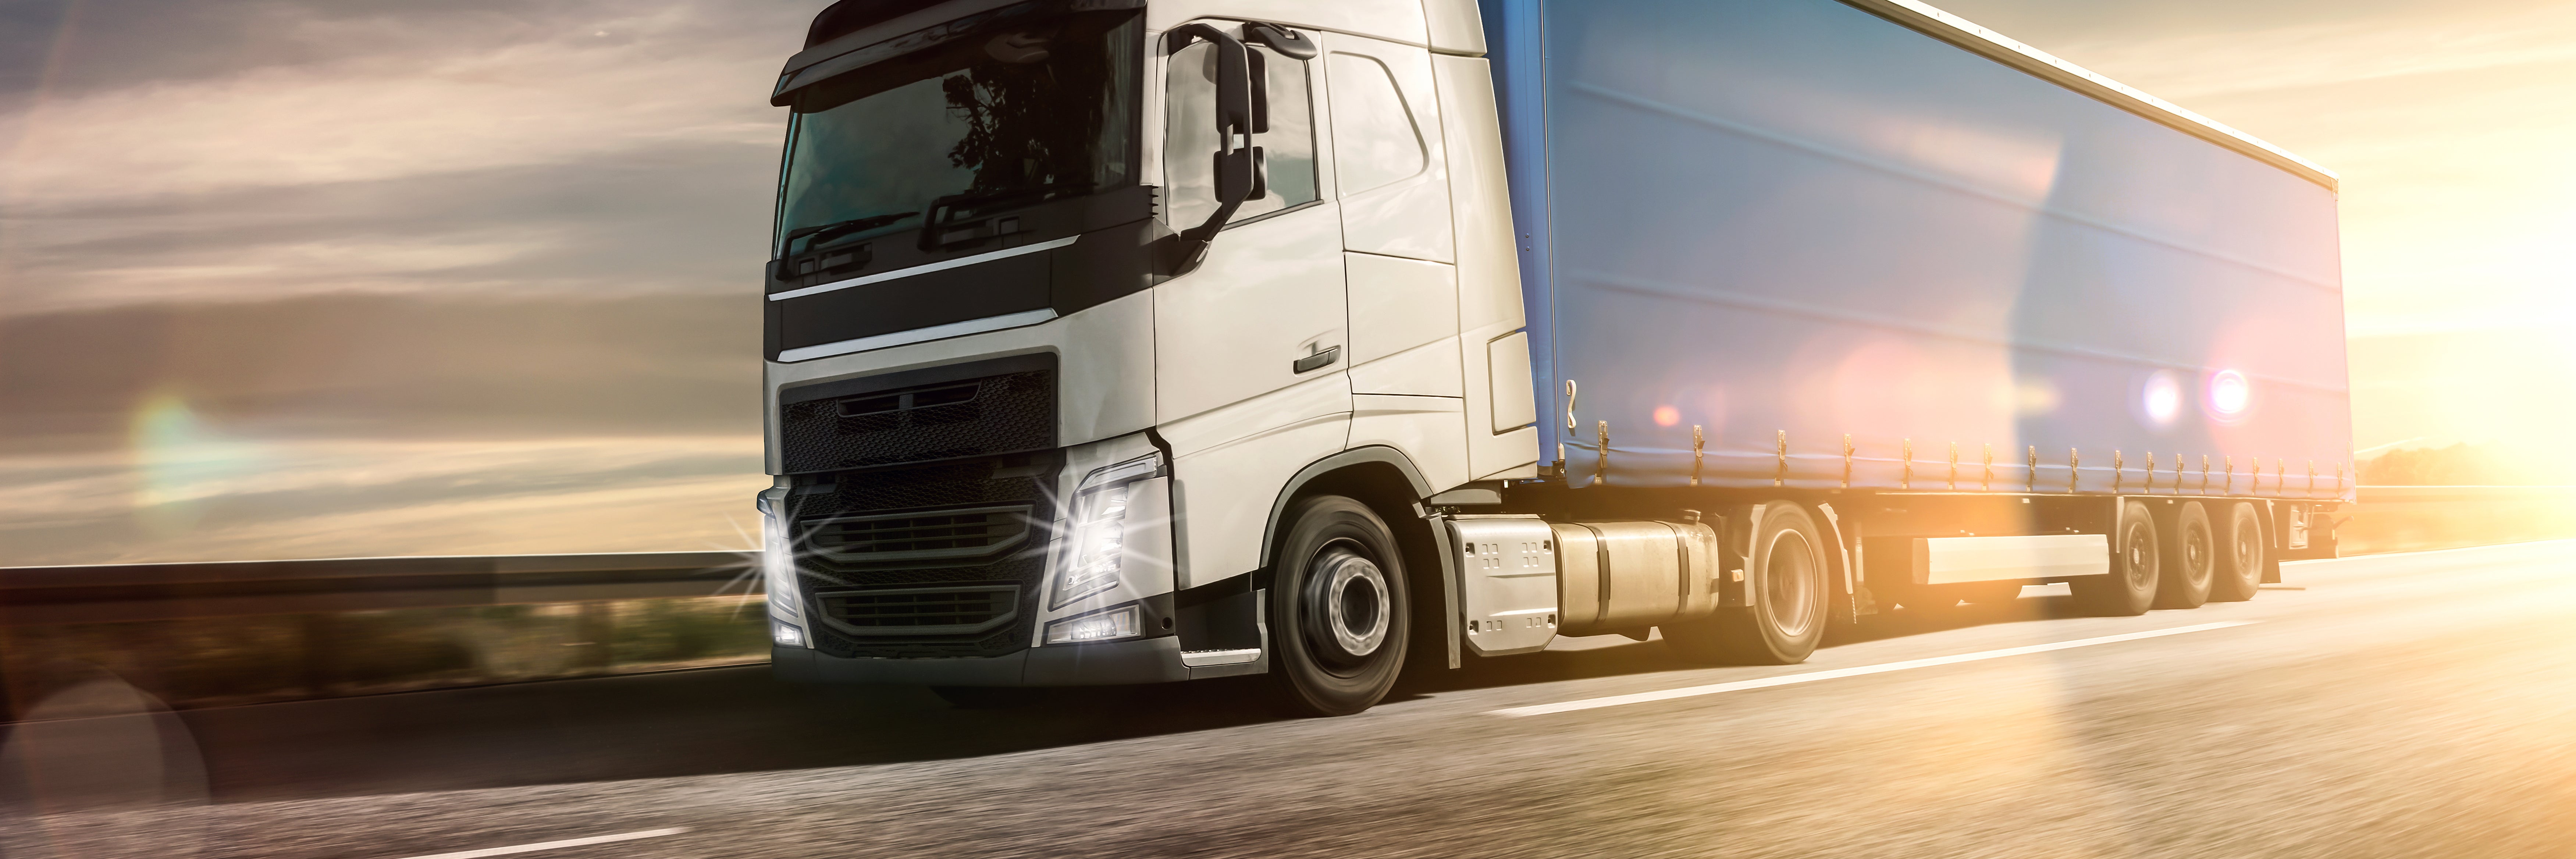 AV growth revving up the trucking industry, but roadblocks still ahead